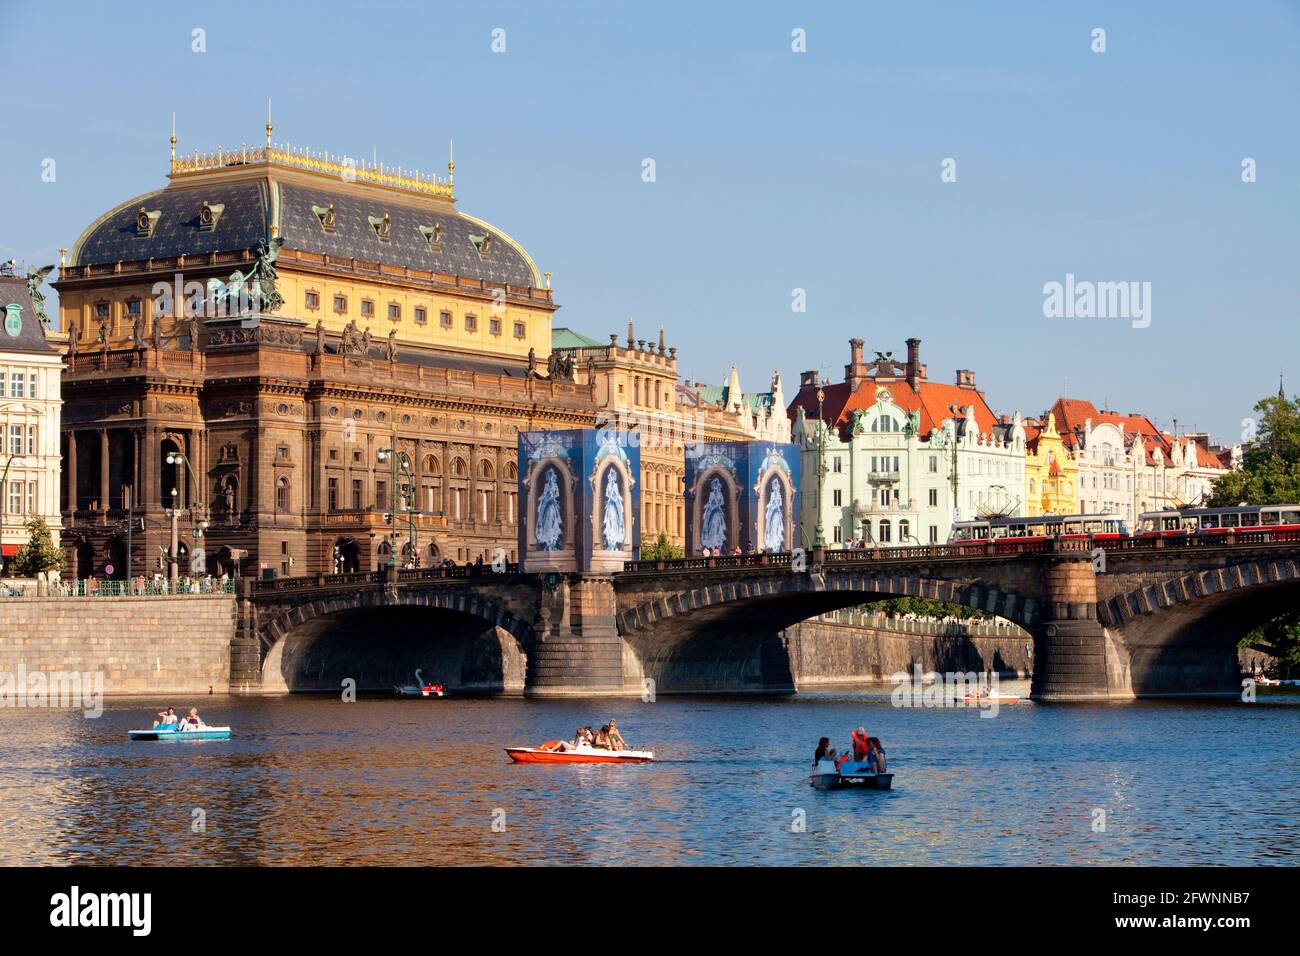 República Checa, Praga - Teatro Nacional y embarcaciones de recreo. Foto de stock